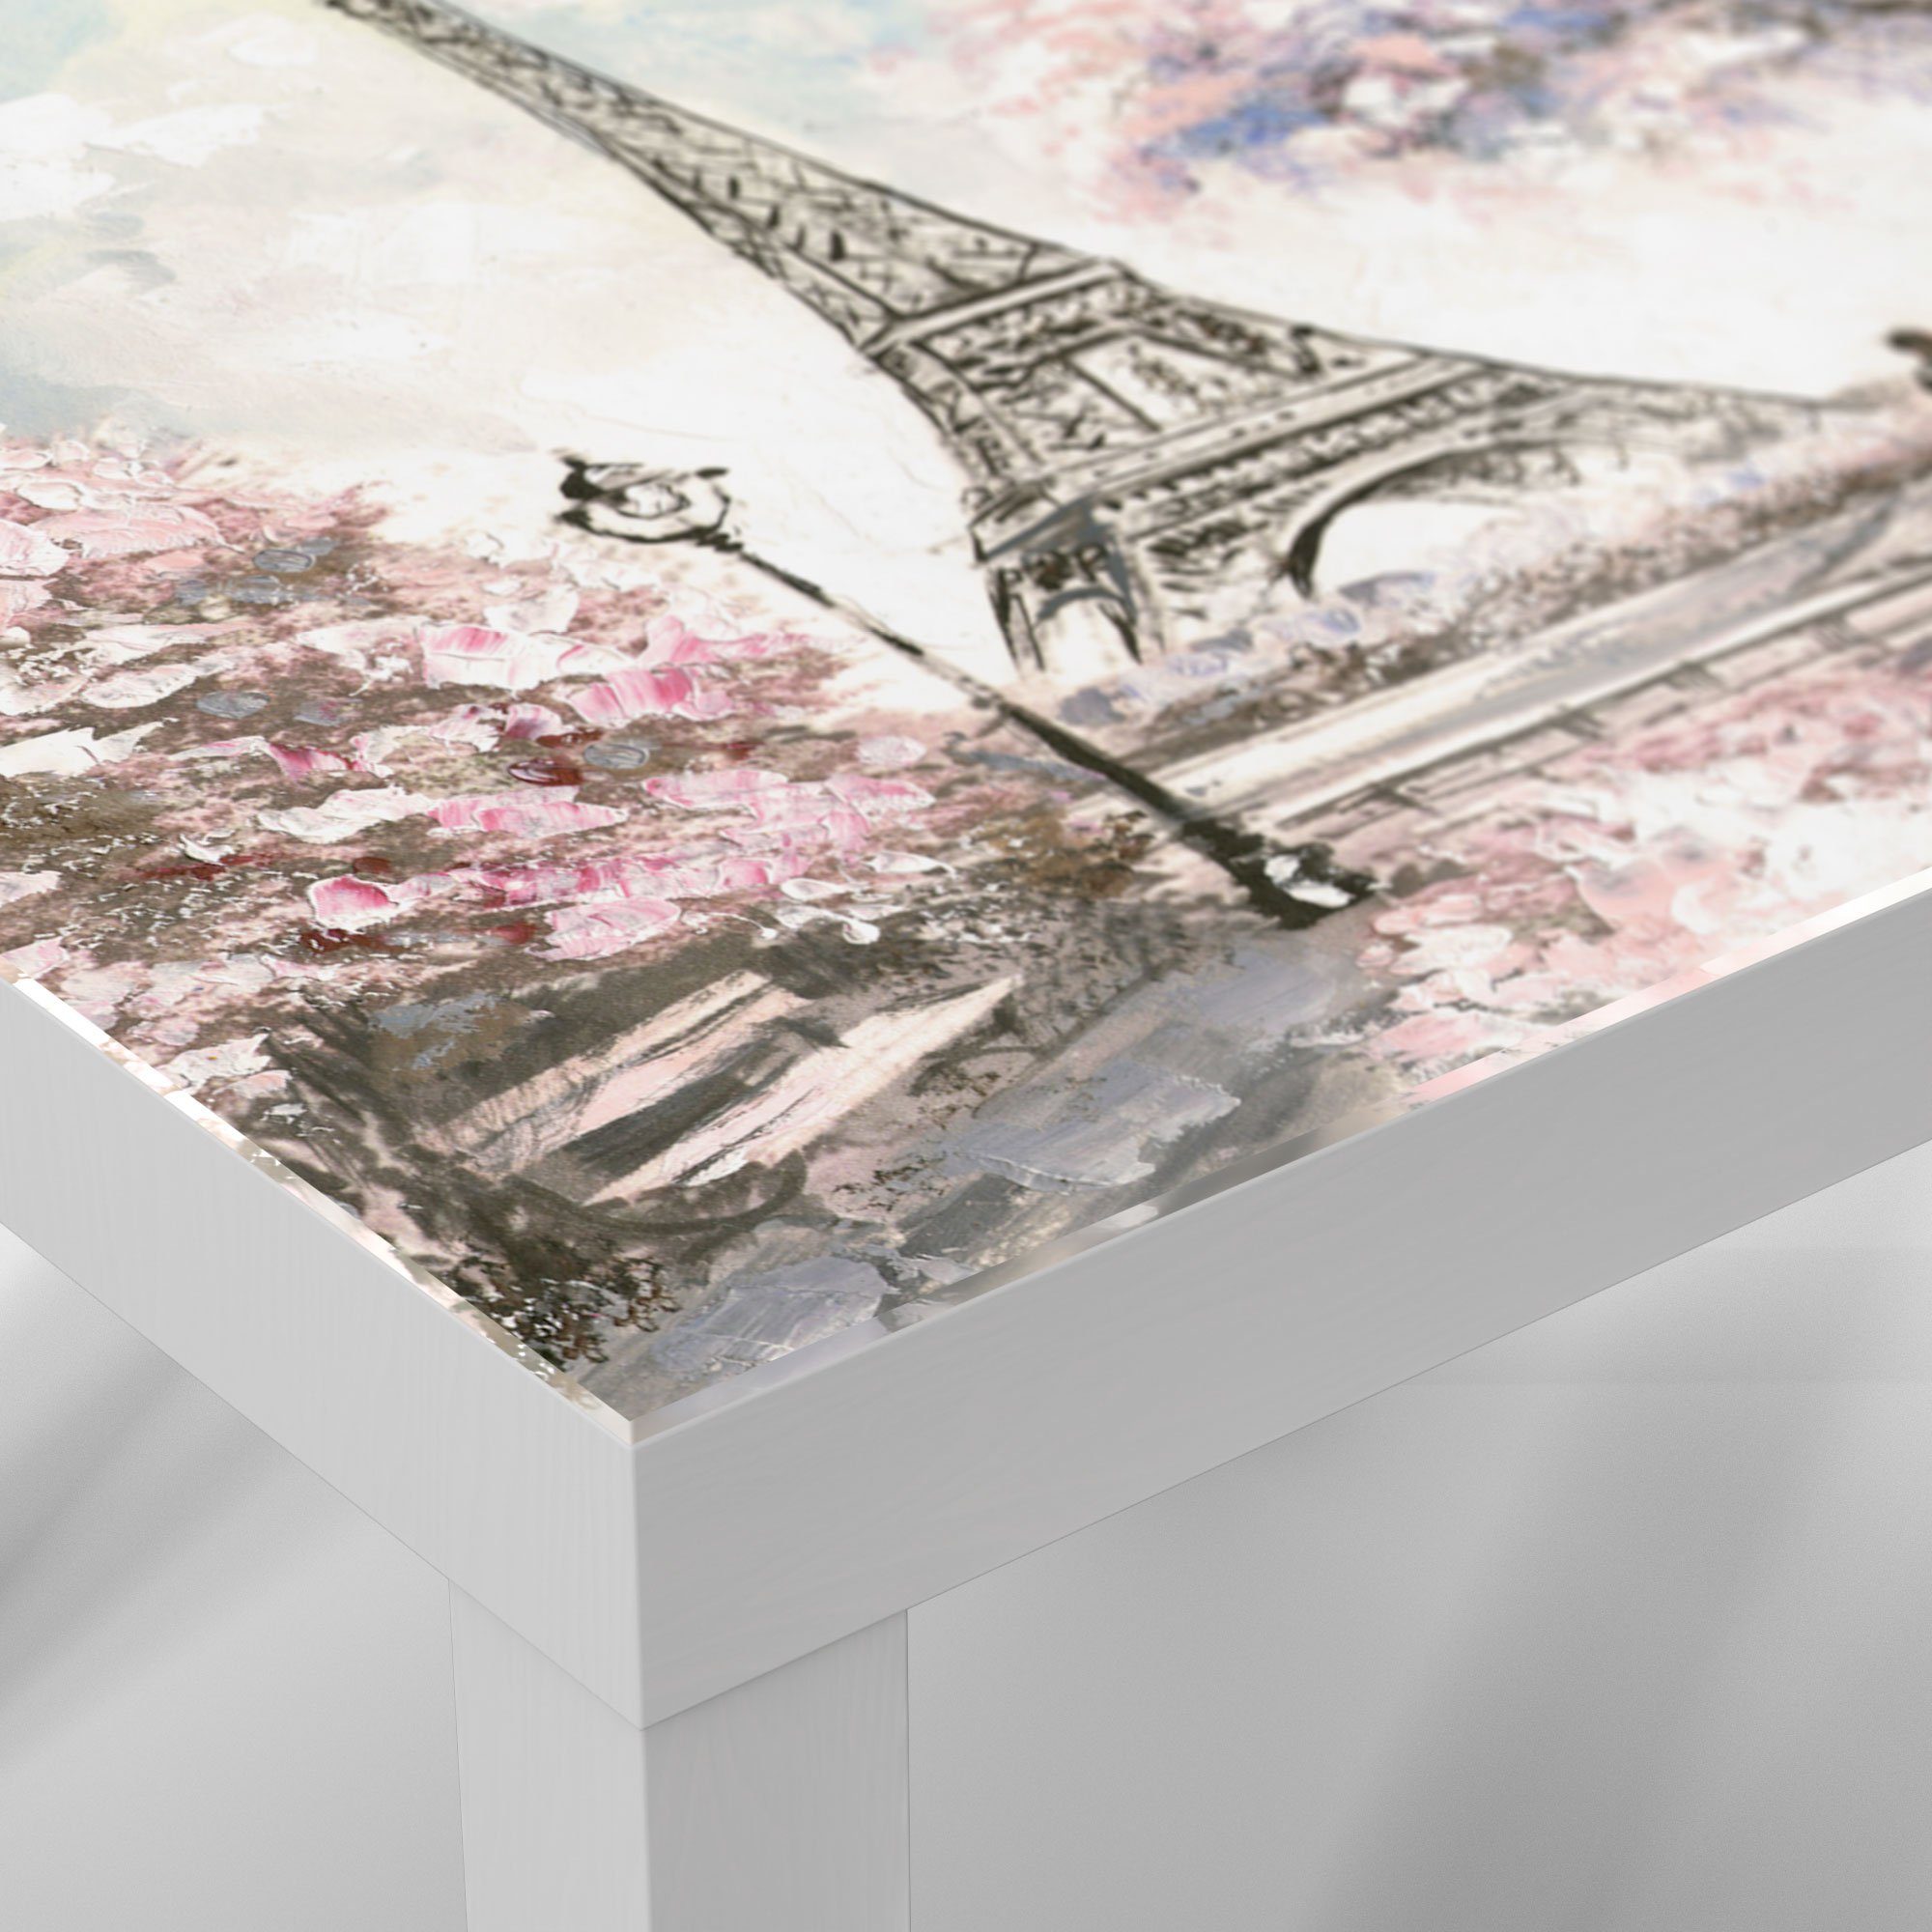 DEQORI Couchtisch 'Eiffelturm im Glastisch Weiß Beistelltisch Frühling', modern Glas